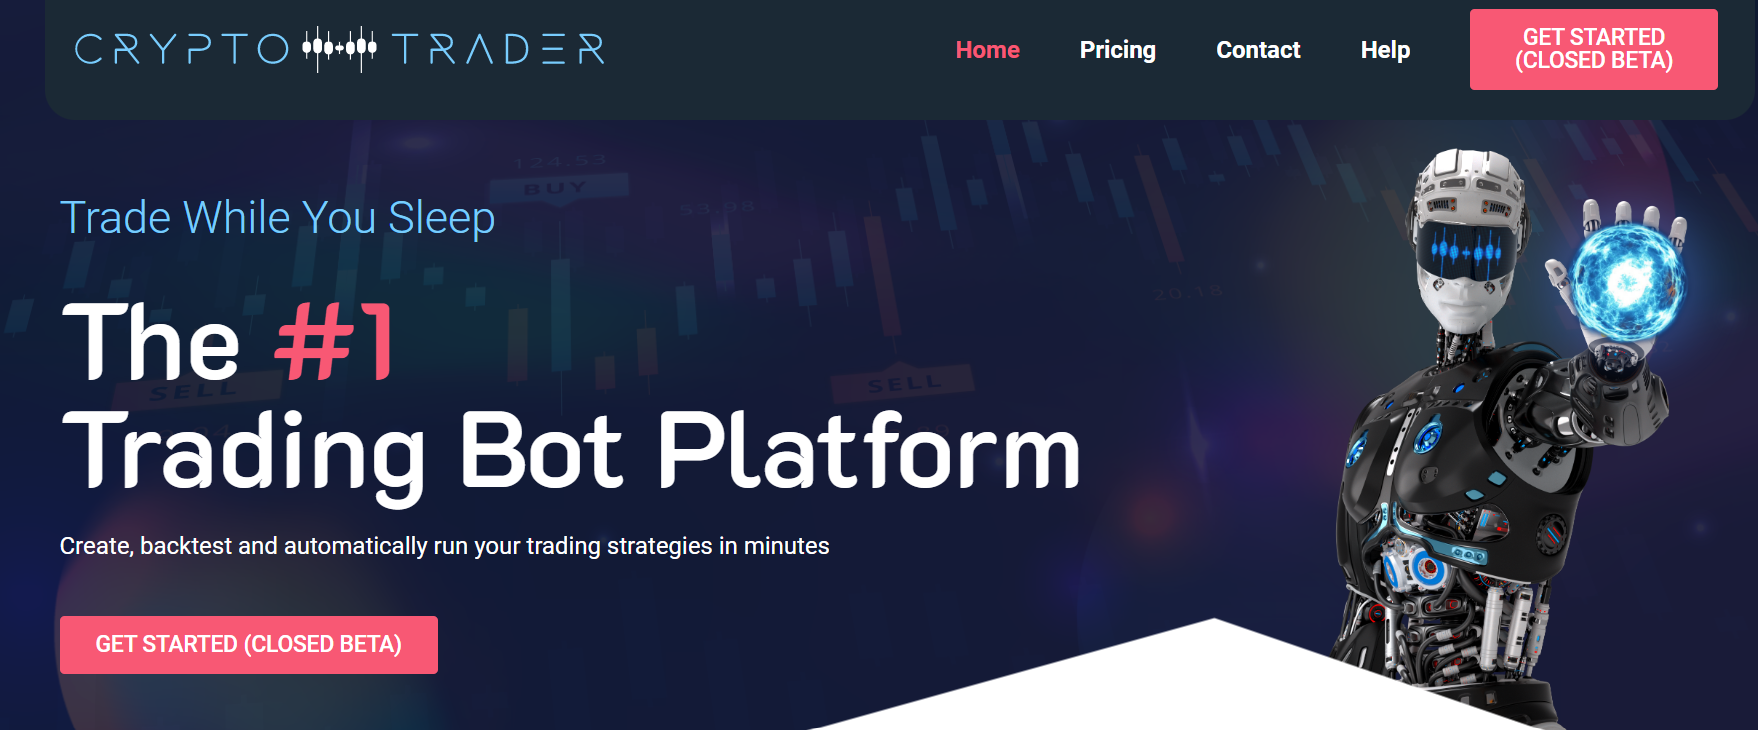 cryptotrader trading bot